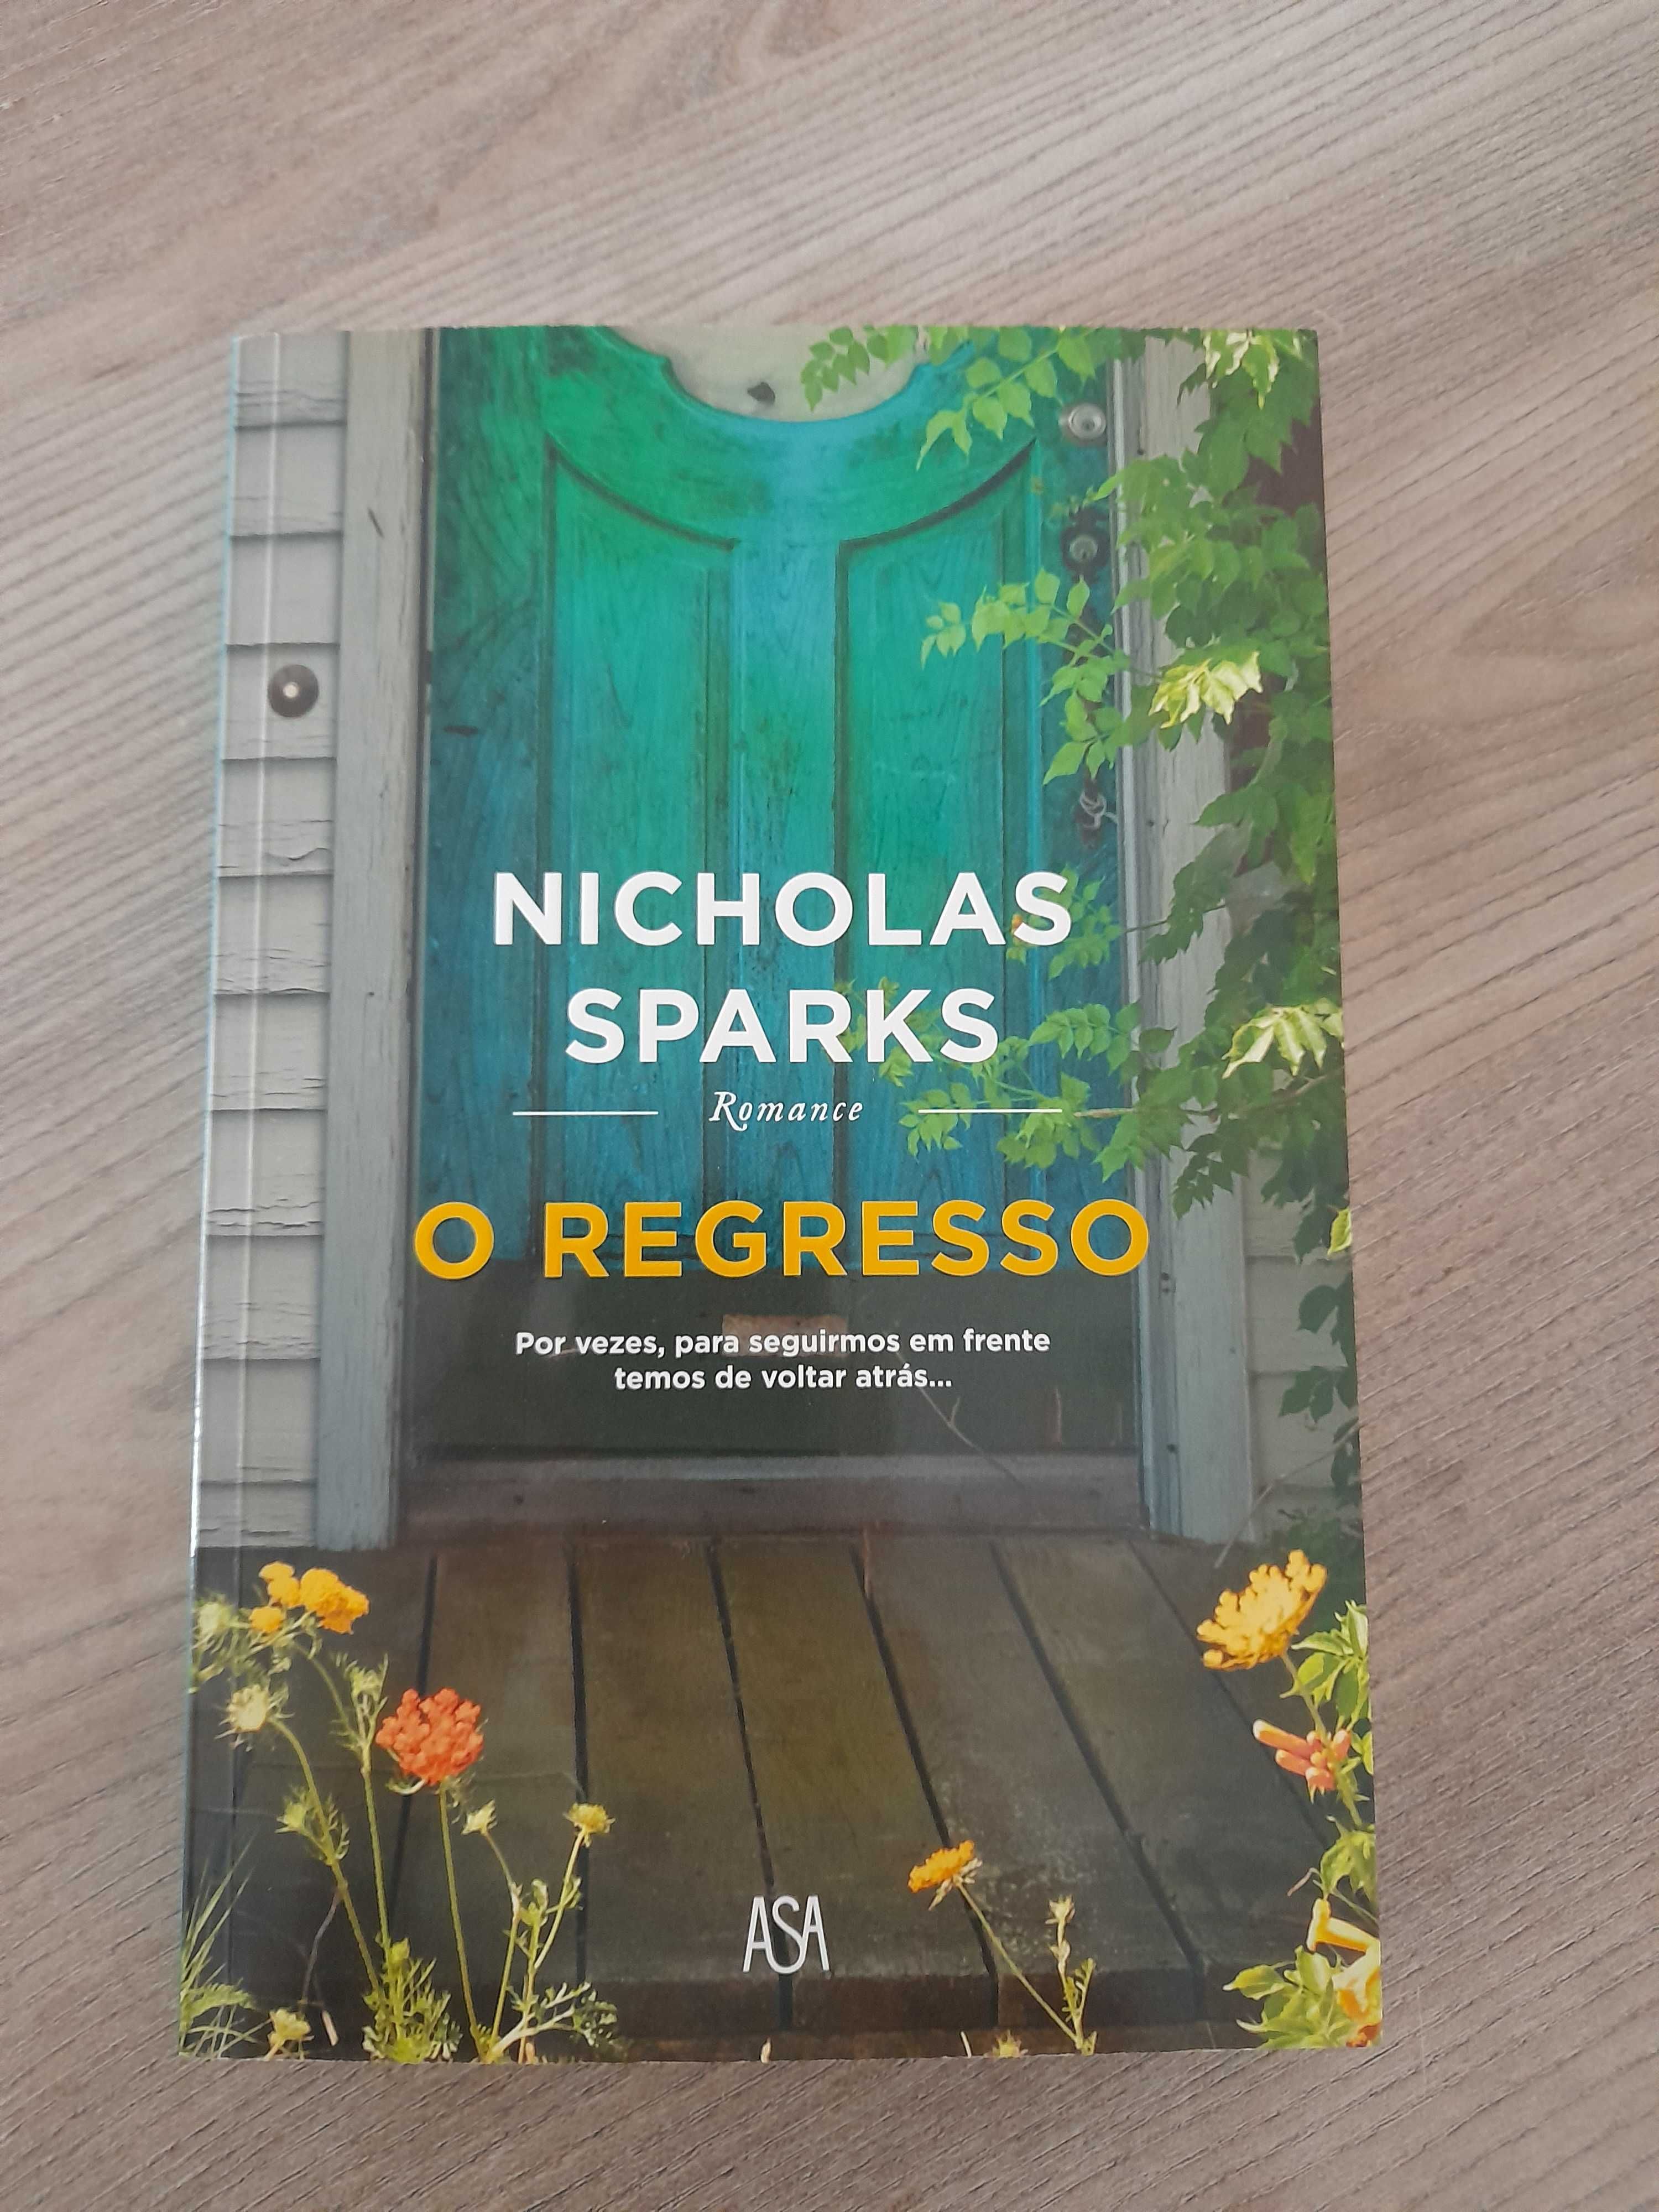 Nicholas Sparks - O Regresso
Edição especial